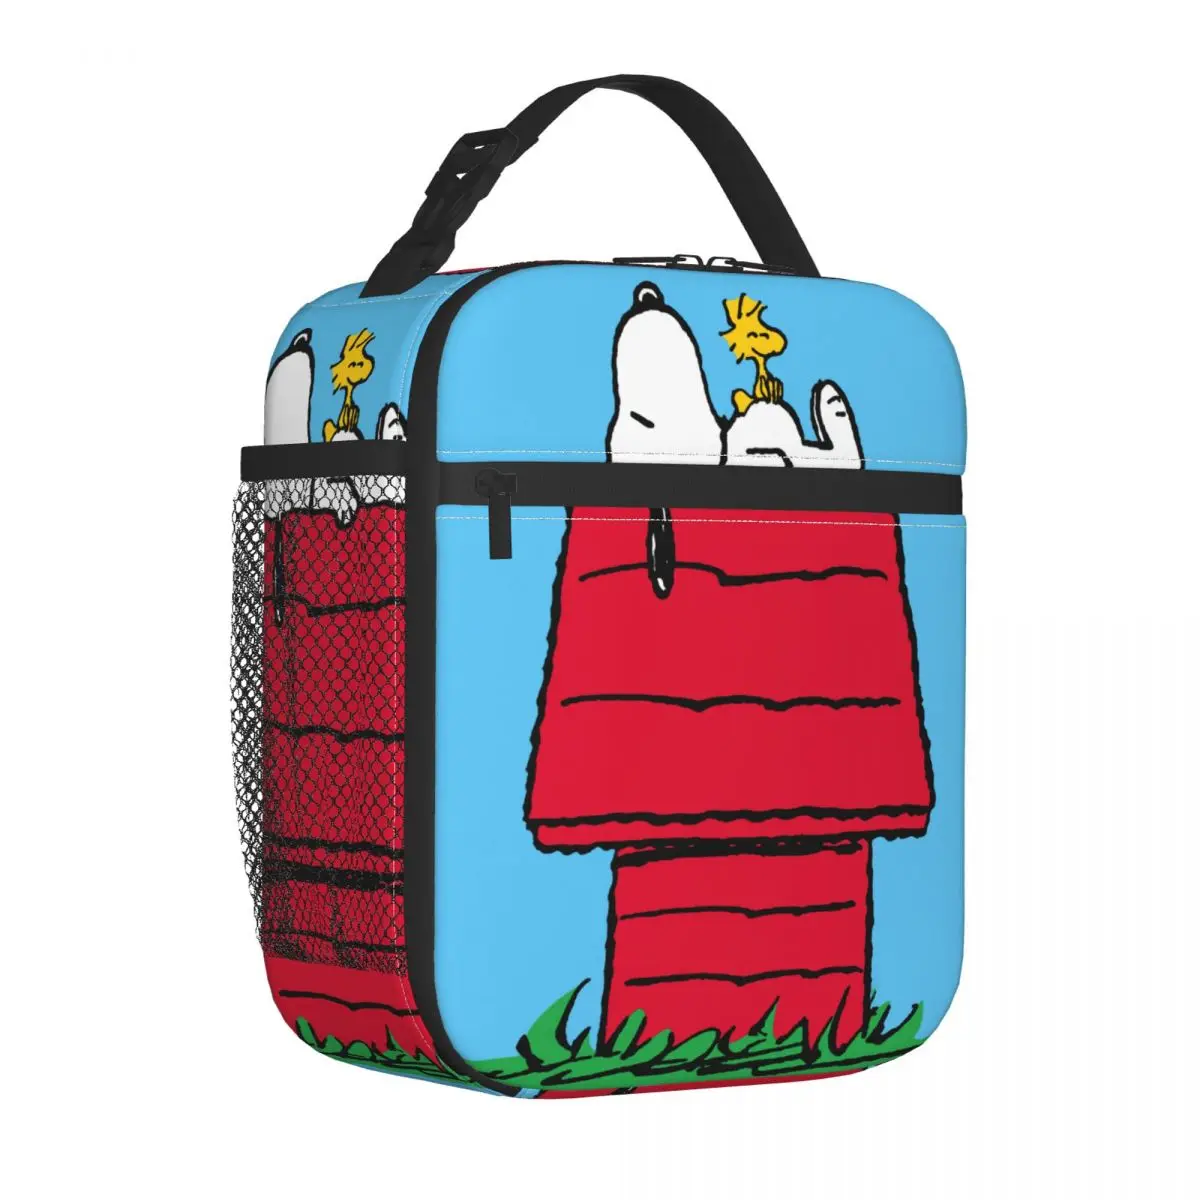 Собачья будка Snoopy Woodstock Изолированная сумка для ланча Термосумка Многоразовый контейнер для еды Большая сумка-тоут Ланч-бокс Сумки для еды на открытом воздухе